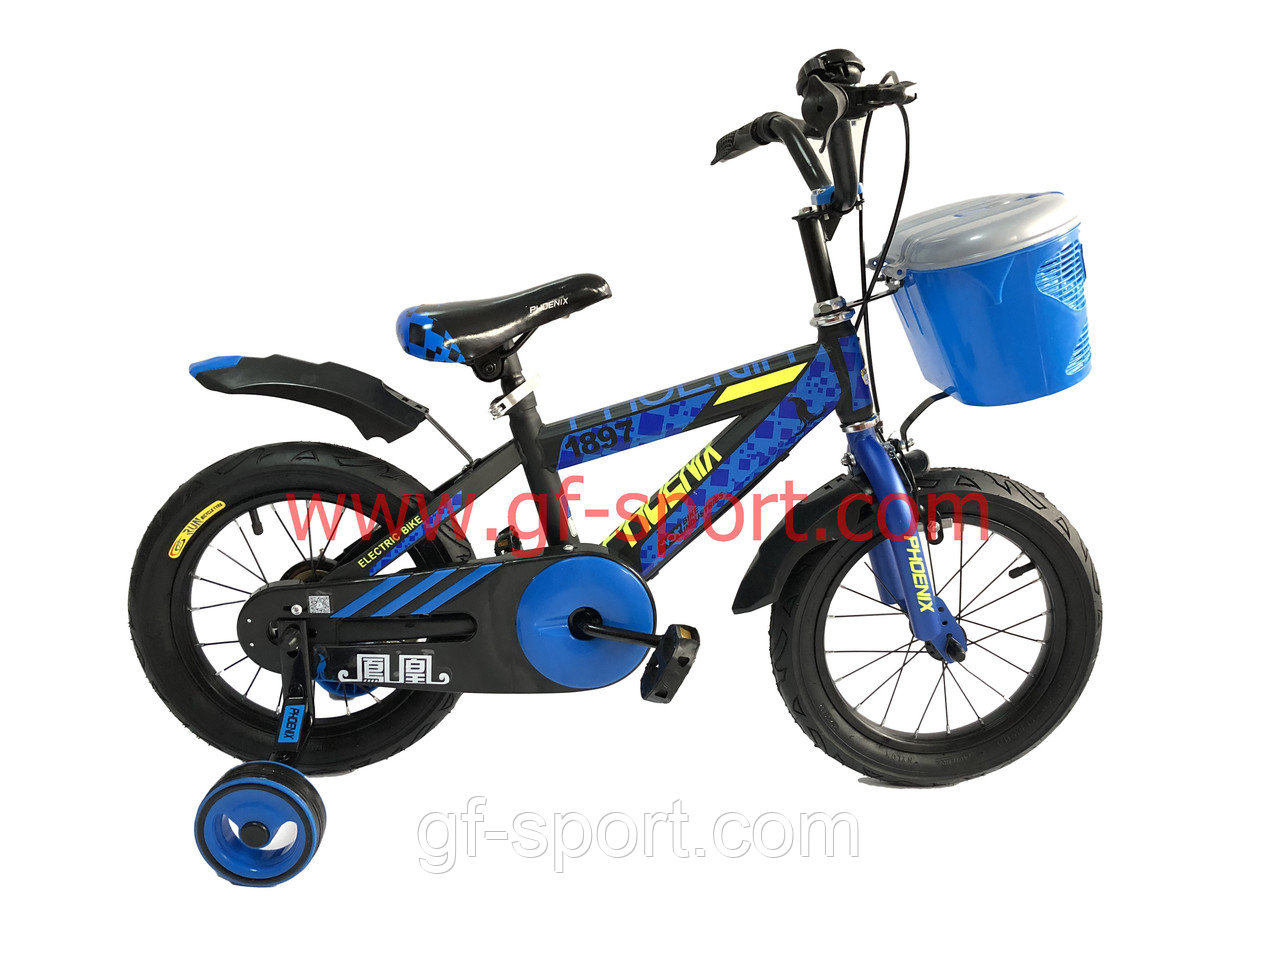 Велосипед Phoenix синий алюминиевый сплав оригинал детский с холостым ходом 12 размер